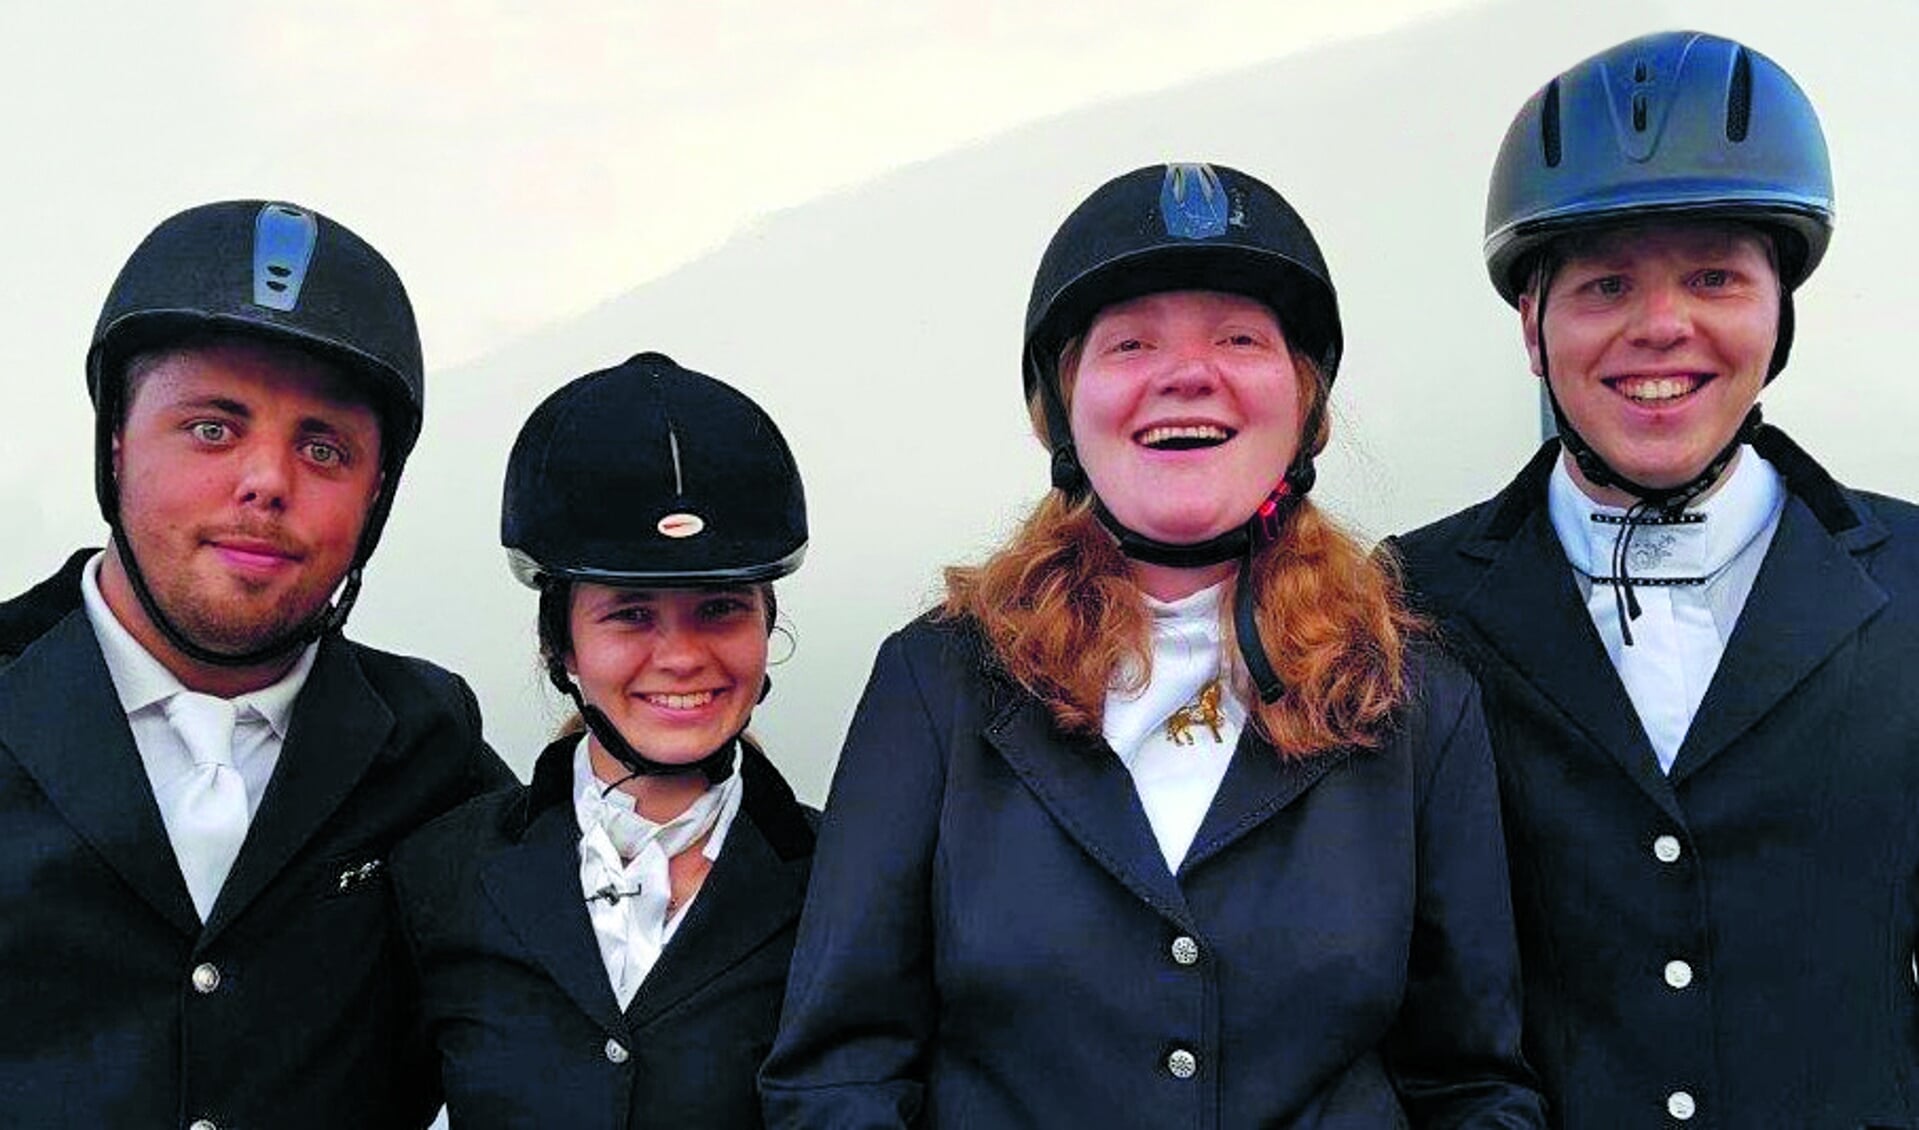 Een delegatie van vier ruiters van Vereniging Paardrijden Gehandicapten Opmeer vertegenwoordigt volgend jaar Nederland tijdens de Special Olympics World Games in Abu Dhabi. (Foto: aangeleverd)